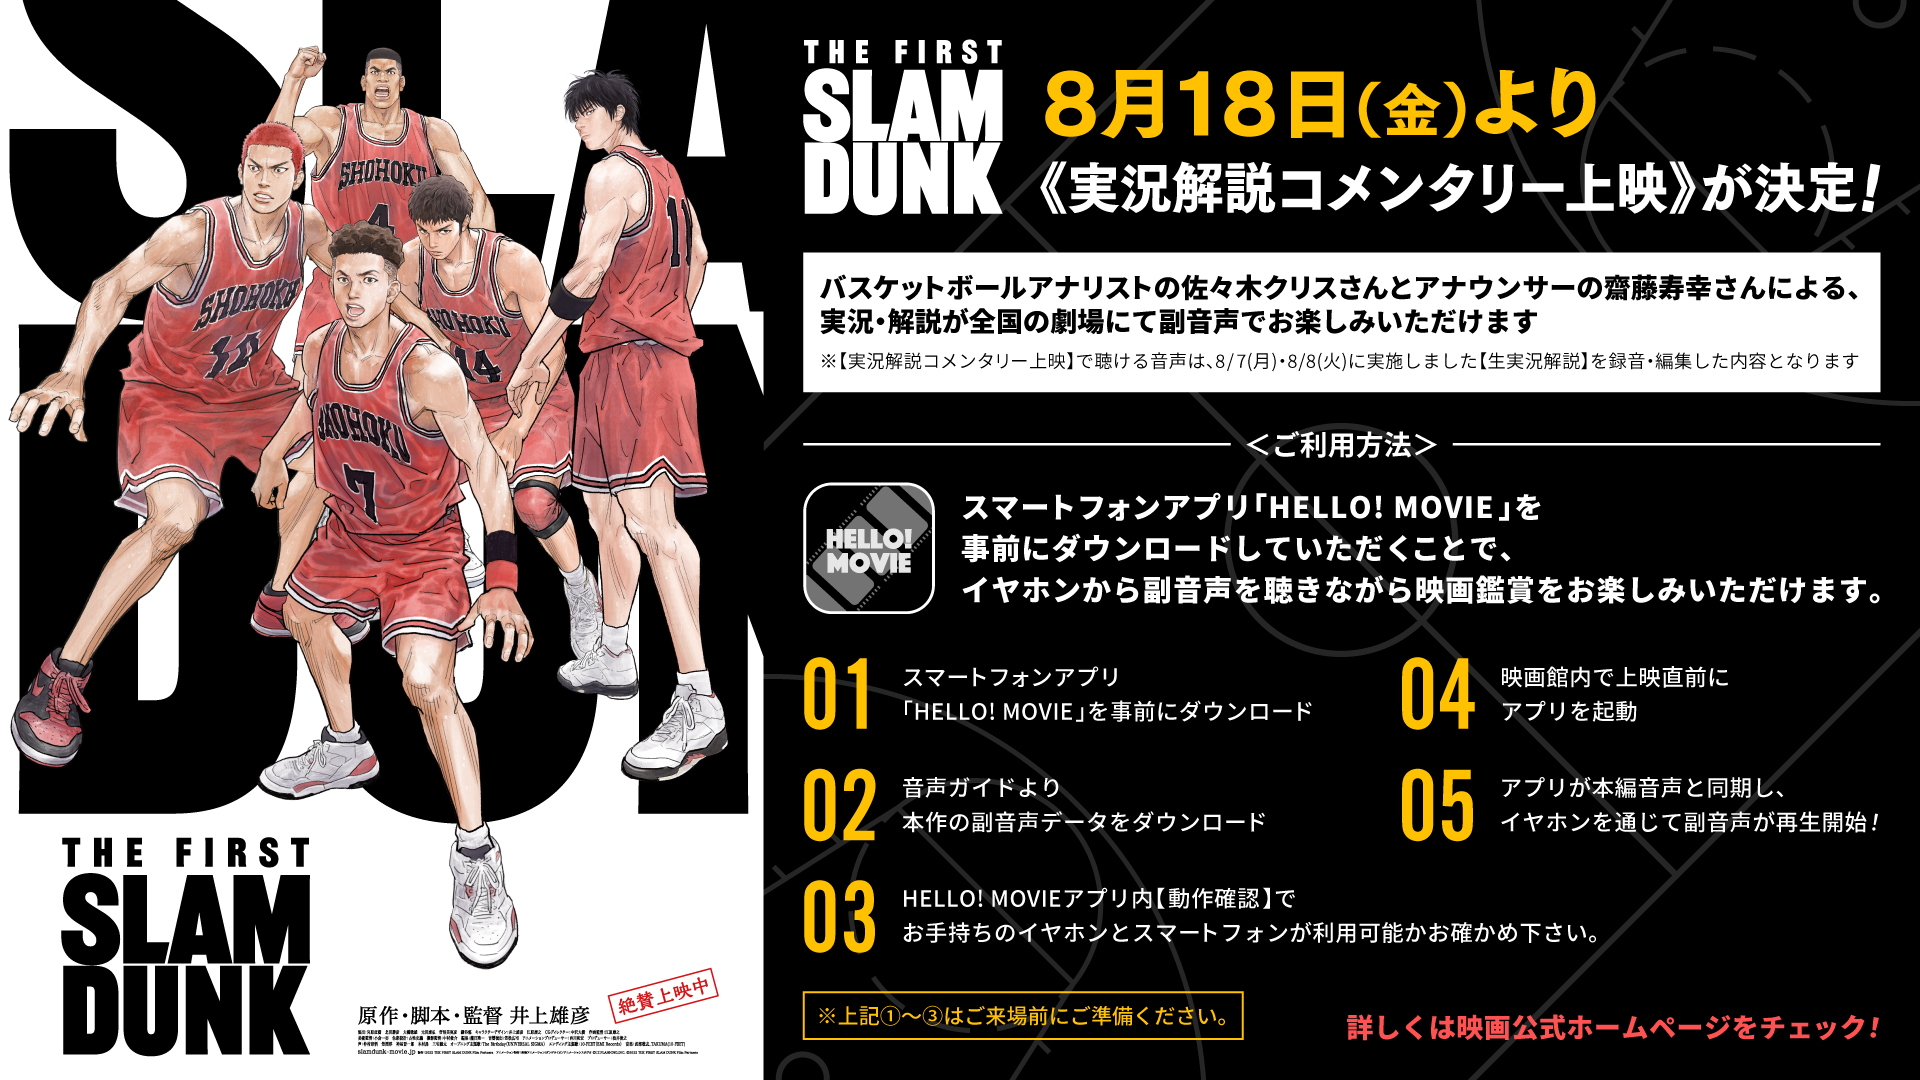 8/18(金)～映画『THE FIRST SLAM DUNK』実況解説コメンタリー上映 バスケットボールアナリストの佐々木クリスさんとアナウンサーの齋藤寿幸さんによる、生実況・解説をお楽しみいただける企画上映です。